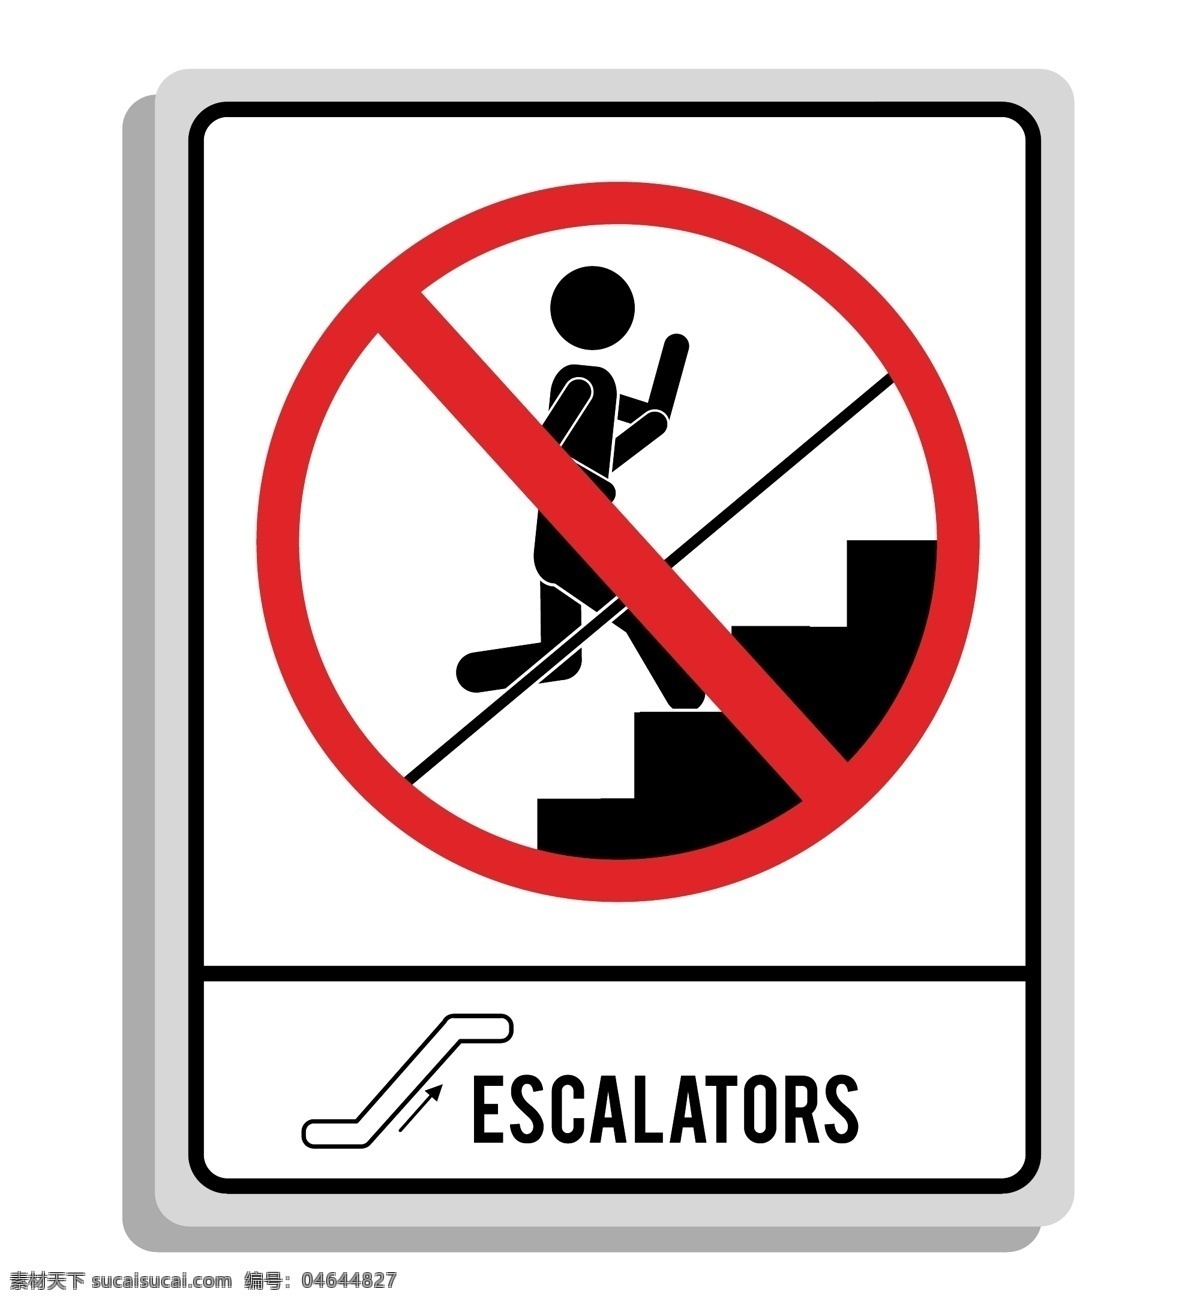 电梯标识 禁止跑步 禁止 禁行 楼梯标识 禁止奔跑 提示标识 标识设计 标识 公共标识 矢量 公共标志 标志图标 公共标识标志